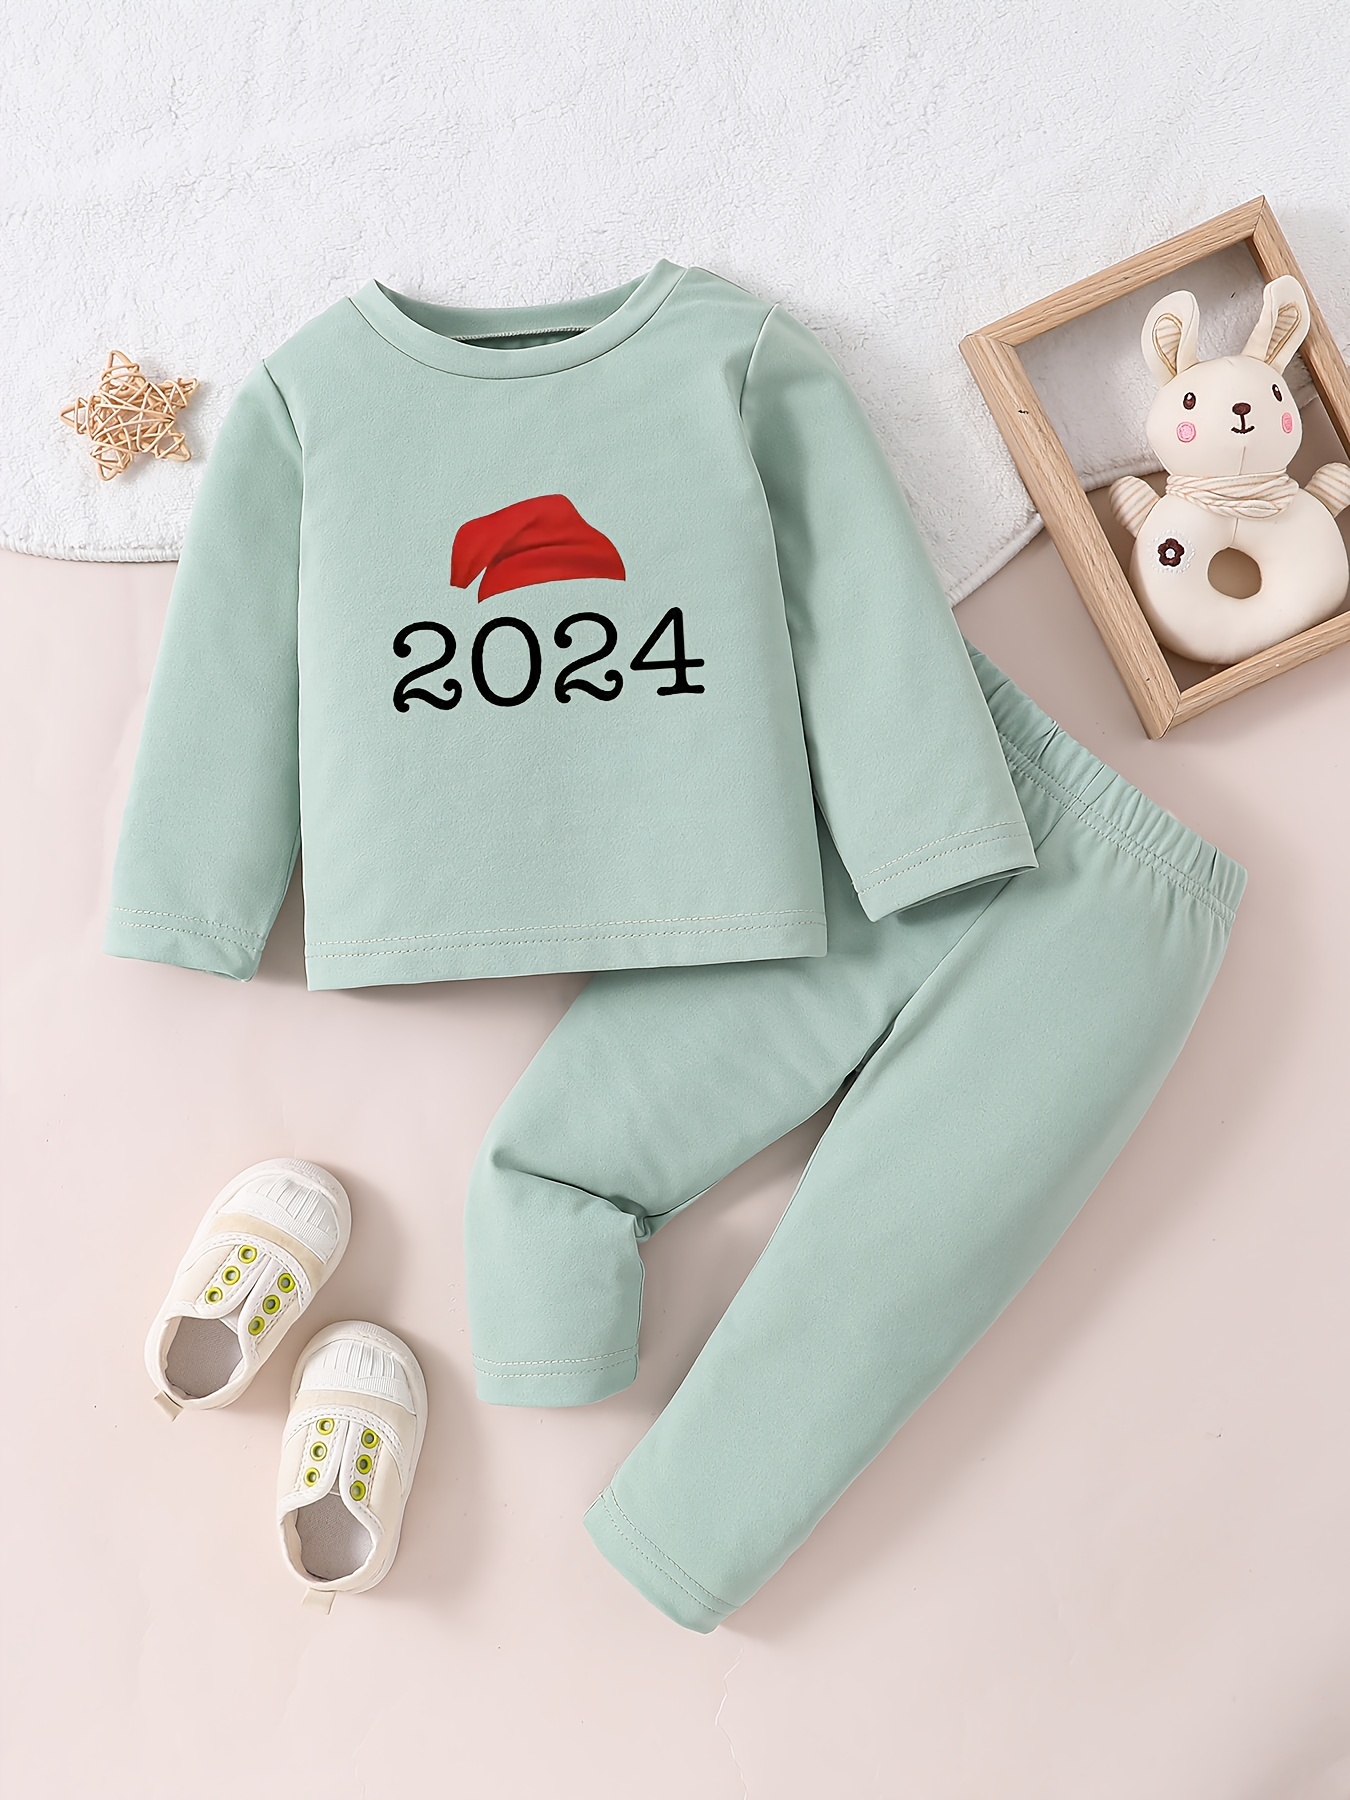 Anticipo de ropa para bebes otoño invierno 2023